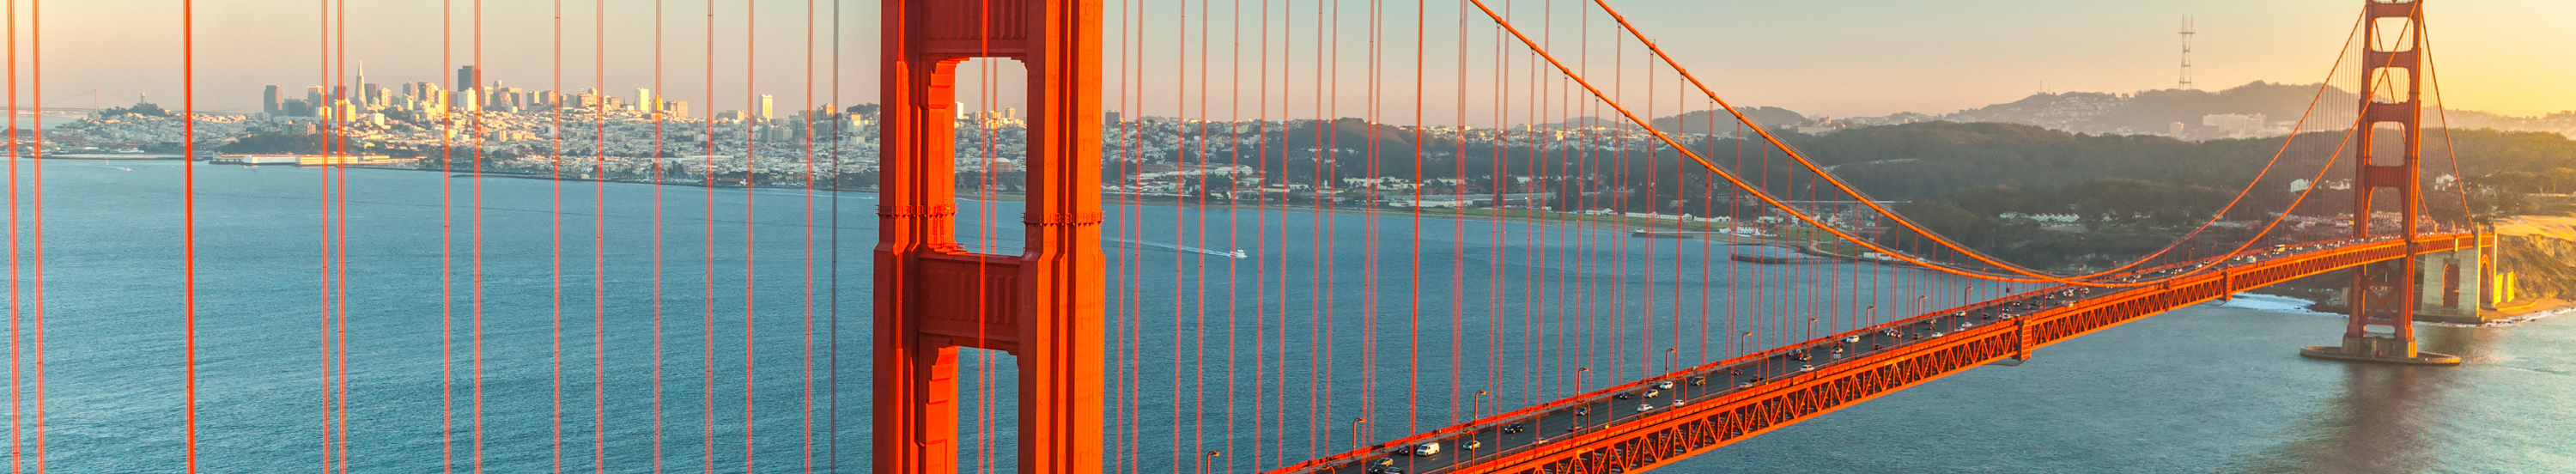 Golden Gate-bron, San Francisco